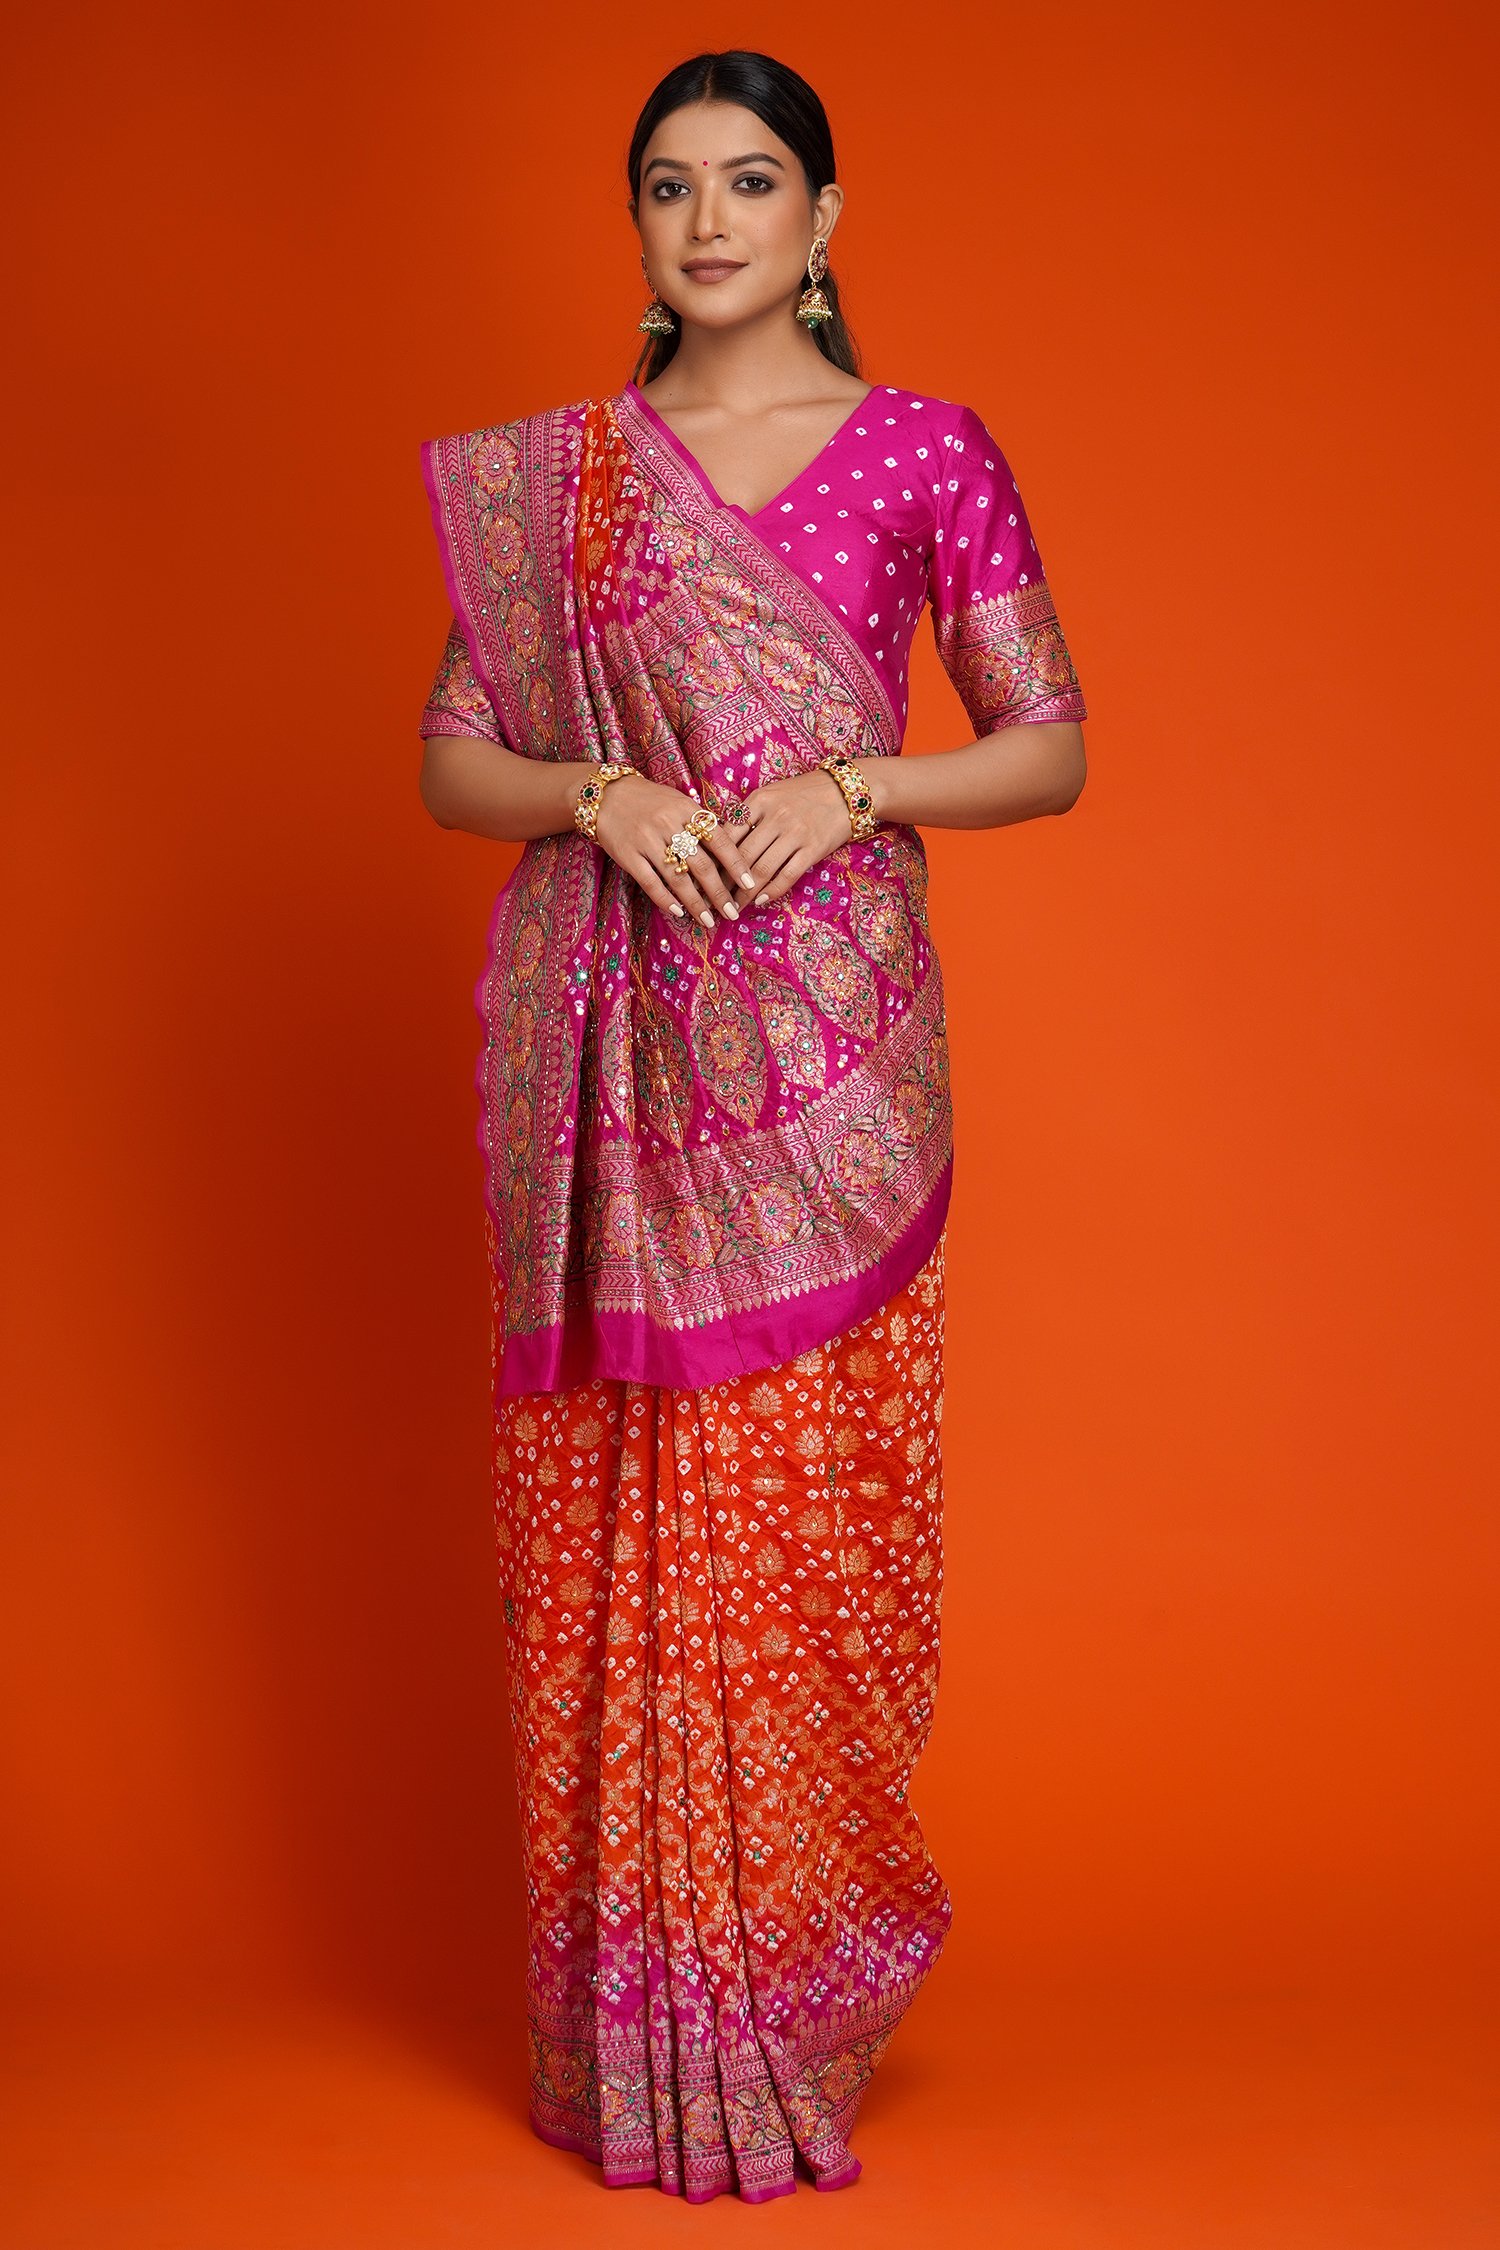 basant-panchami-202-special-yellow-saree-wear-bollywood-actress-approved-yellow-saree  – News18 हिंदी